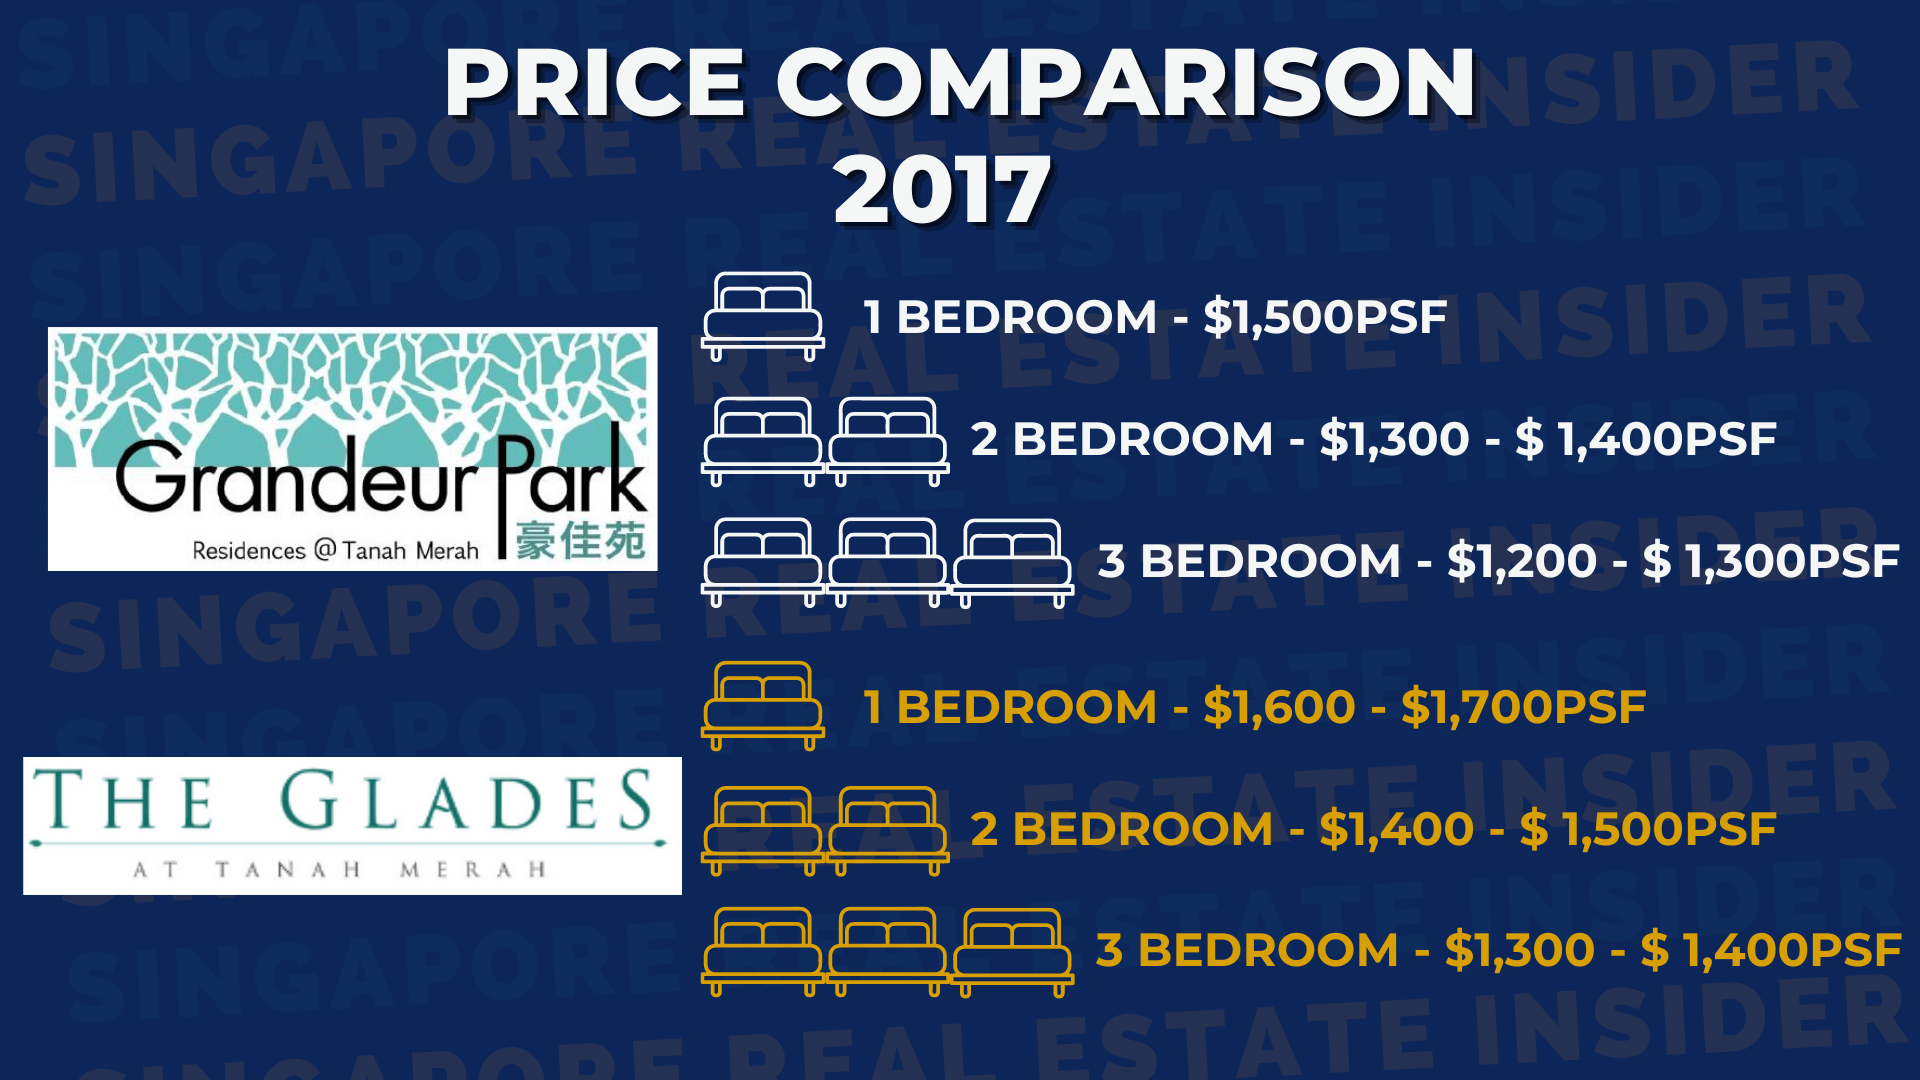 Price Comparison - 2017